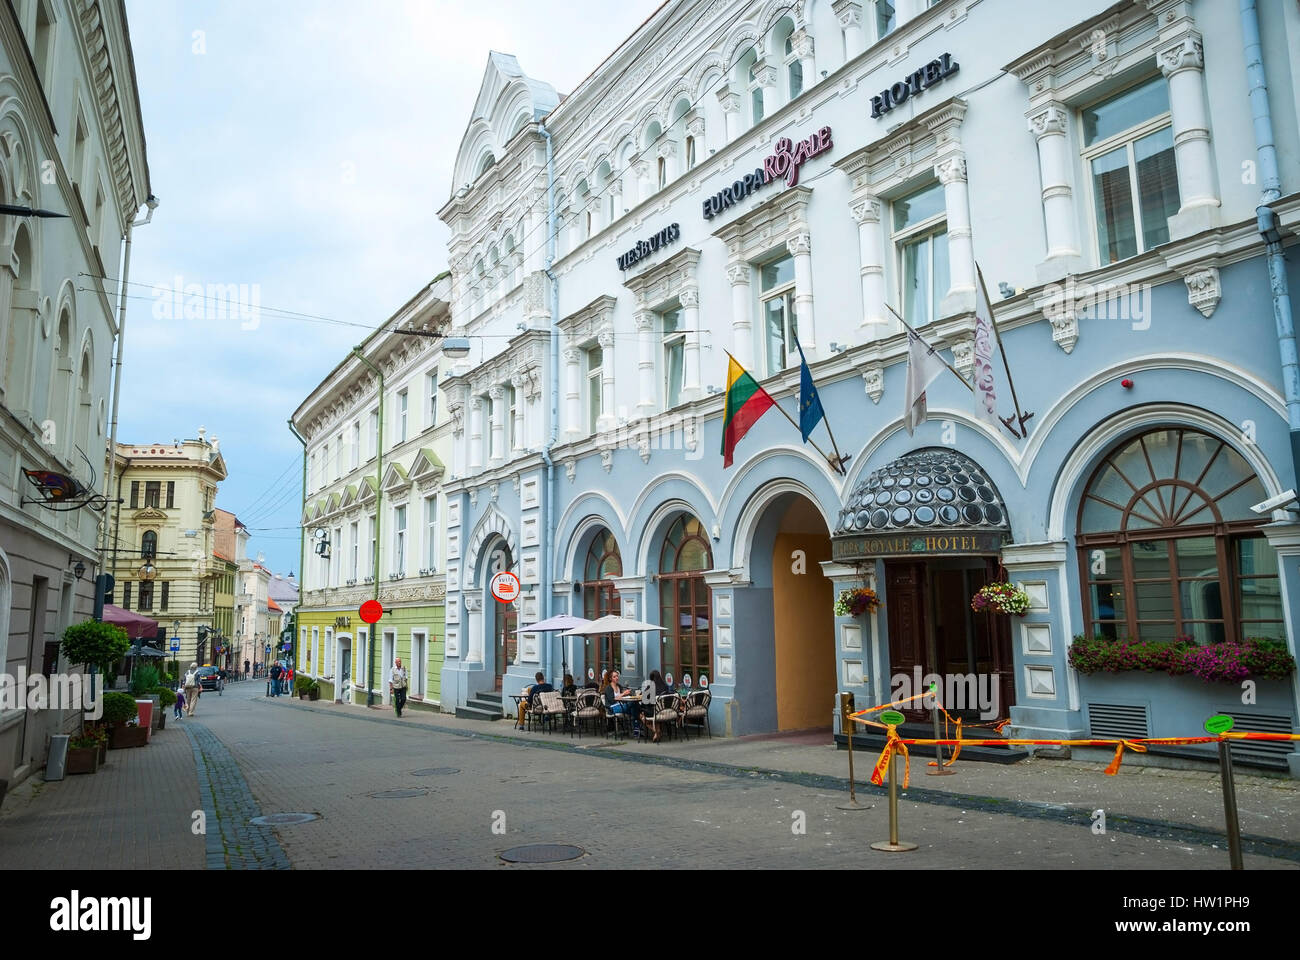 VILNIUS, LITUANIE - 8 juillet : extérieur du bâtiment de l'hôtel bleu et blanc, dans la vieille ville de Vilnius. Juillet 205. Banque D'Images